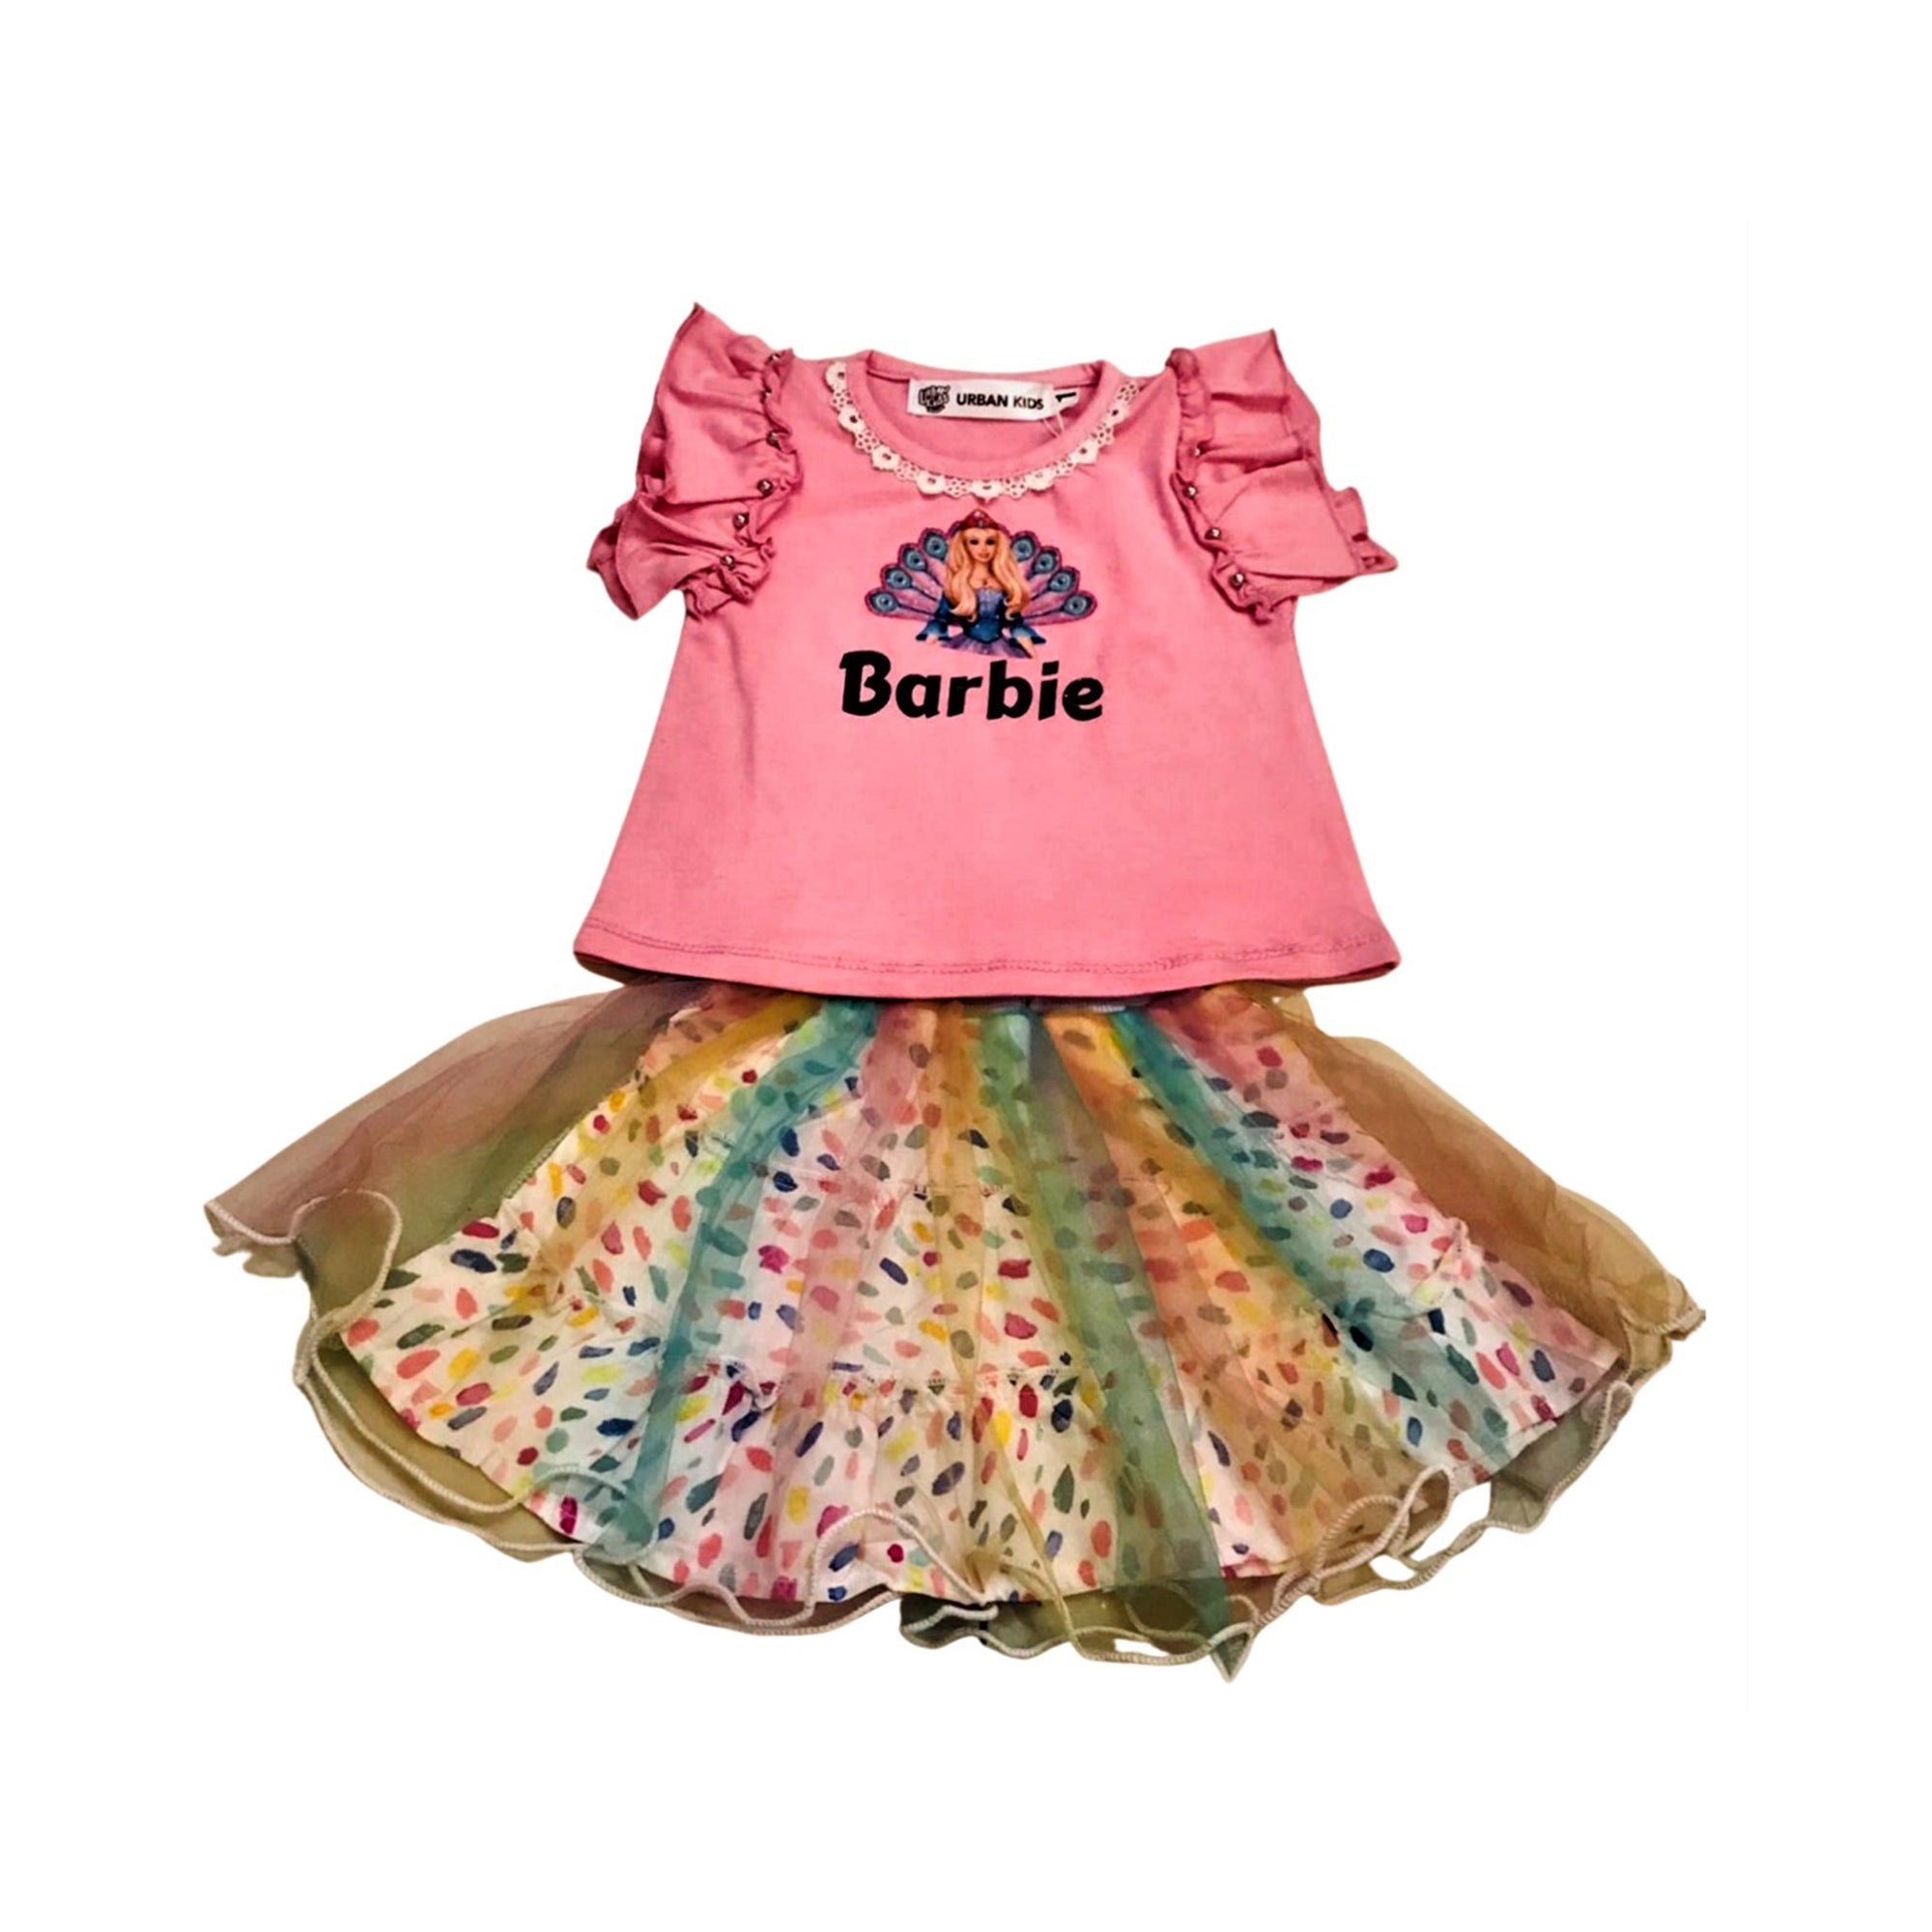 Barbie Shirt and Skirt 2 Piece Dress